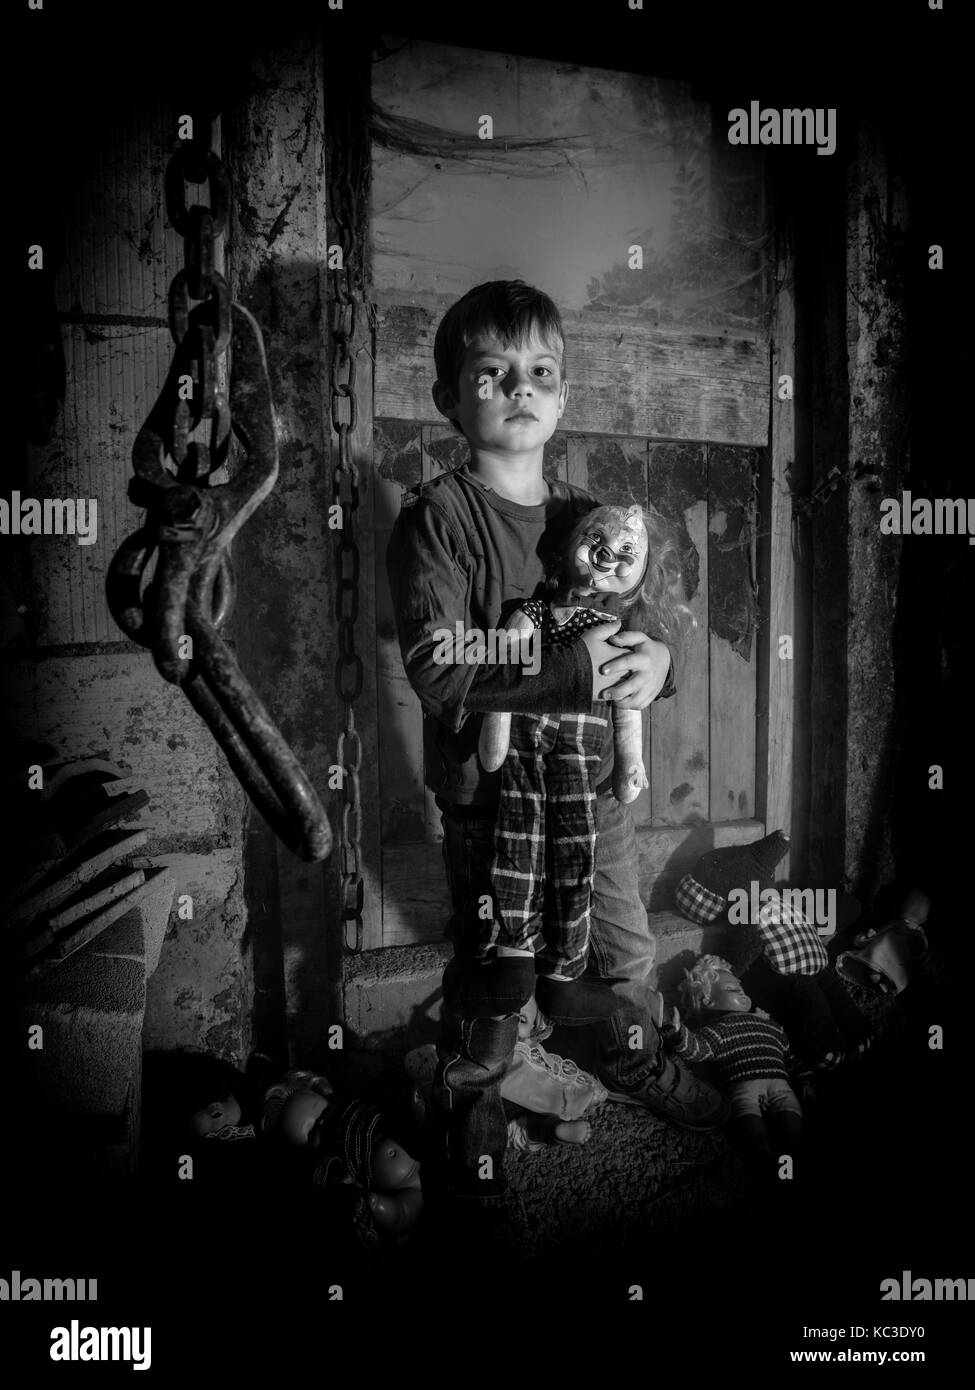 Photo d'un jeune garçon creepy maintenant une vieille poupée clown dans une vieille grange couverte de toiles d'araignées et de poussière. Banque D'Images